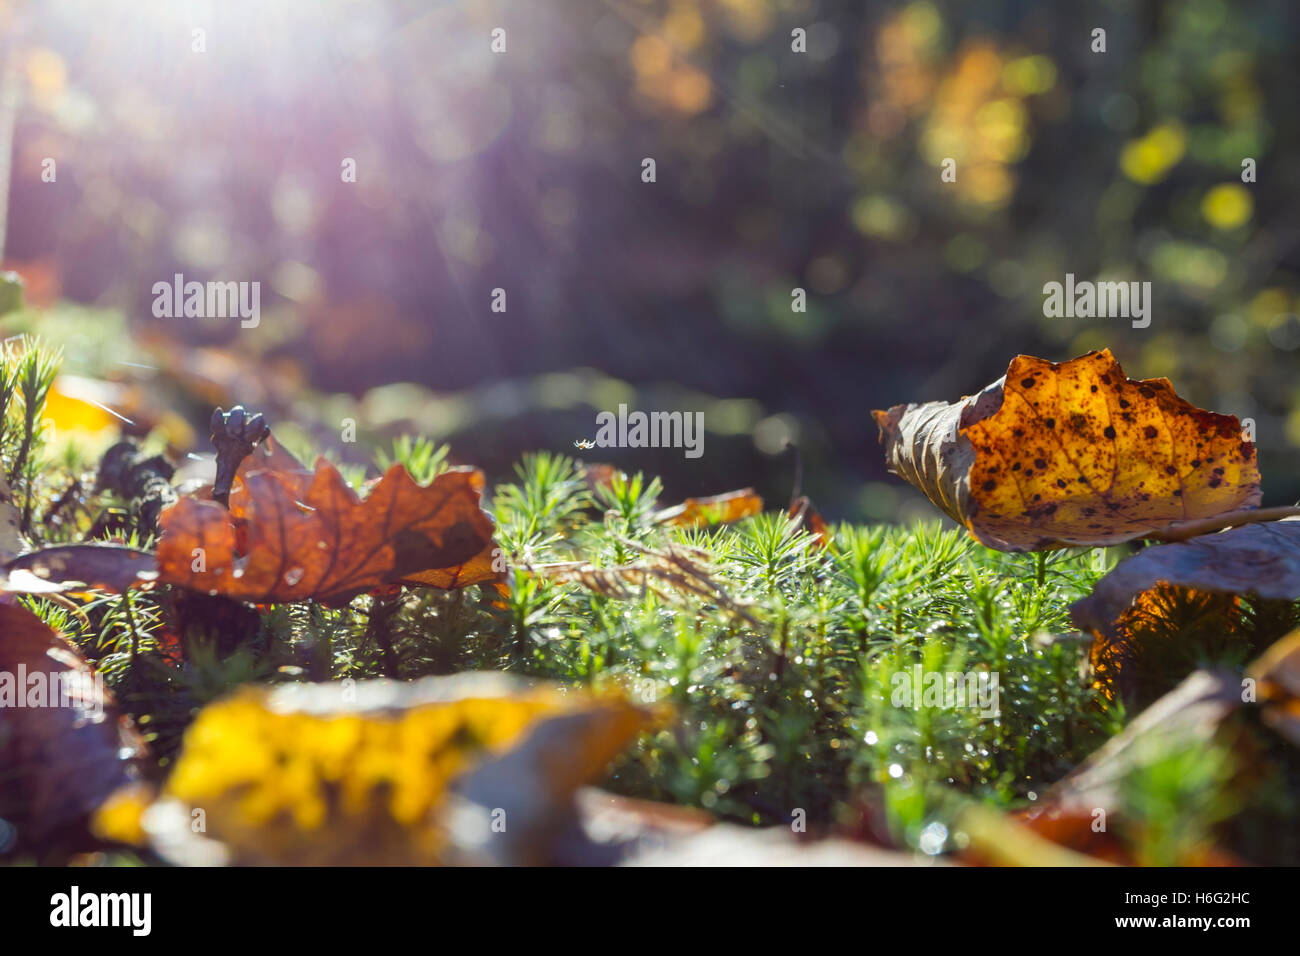 Herbstlaub im Gegenlicht, foliage in the backlight Stock Photo